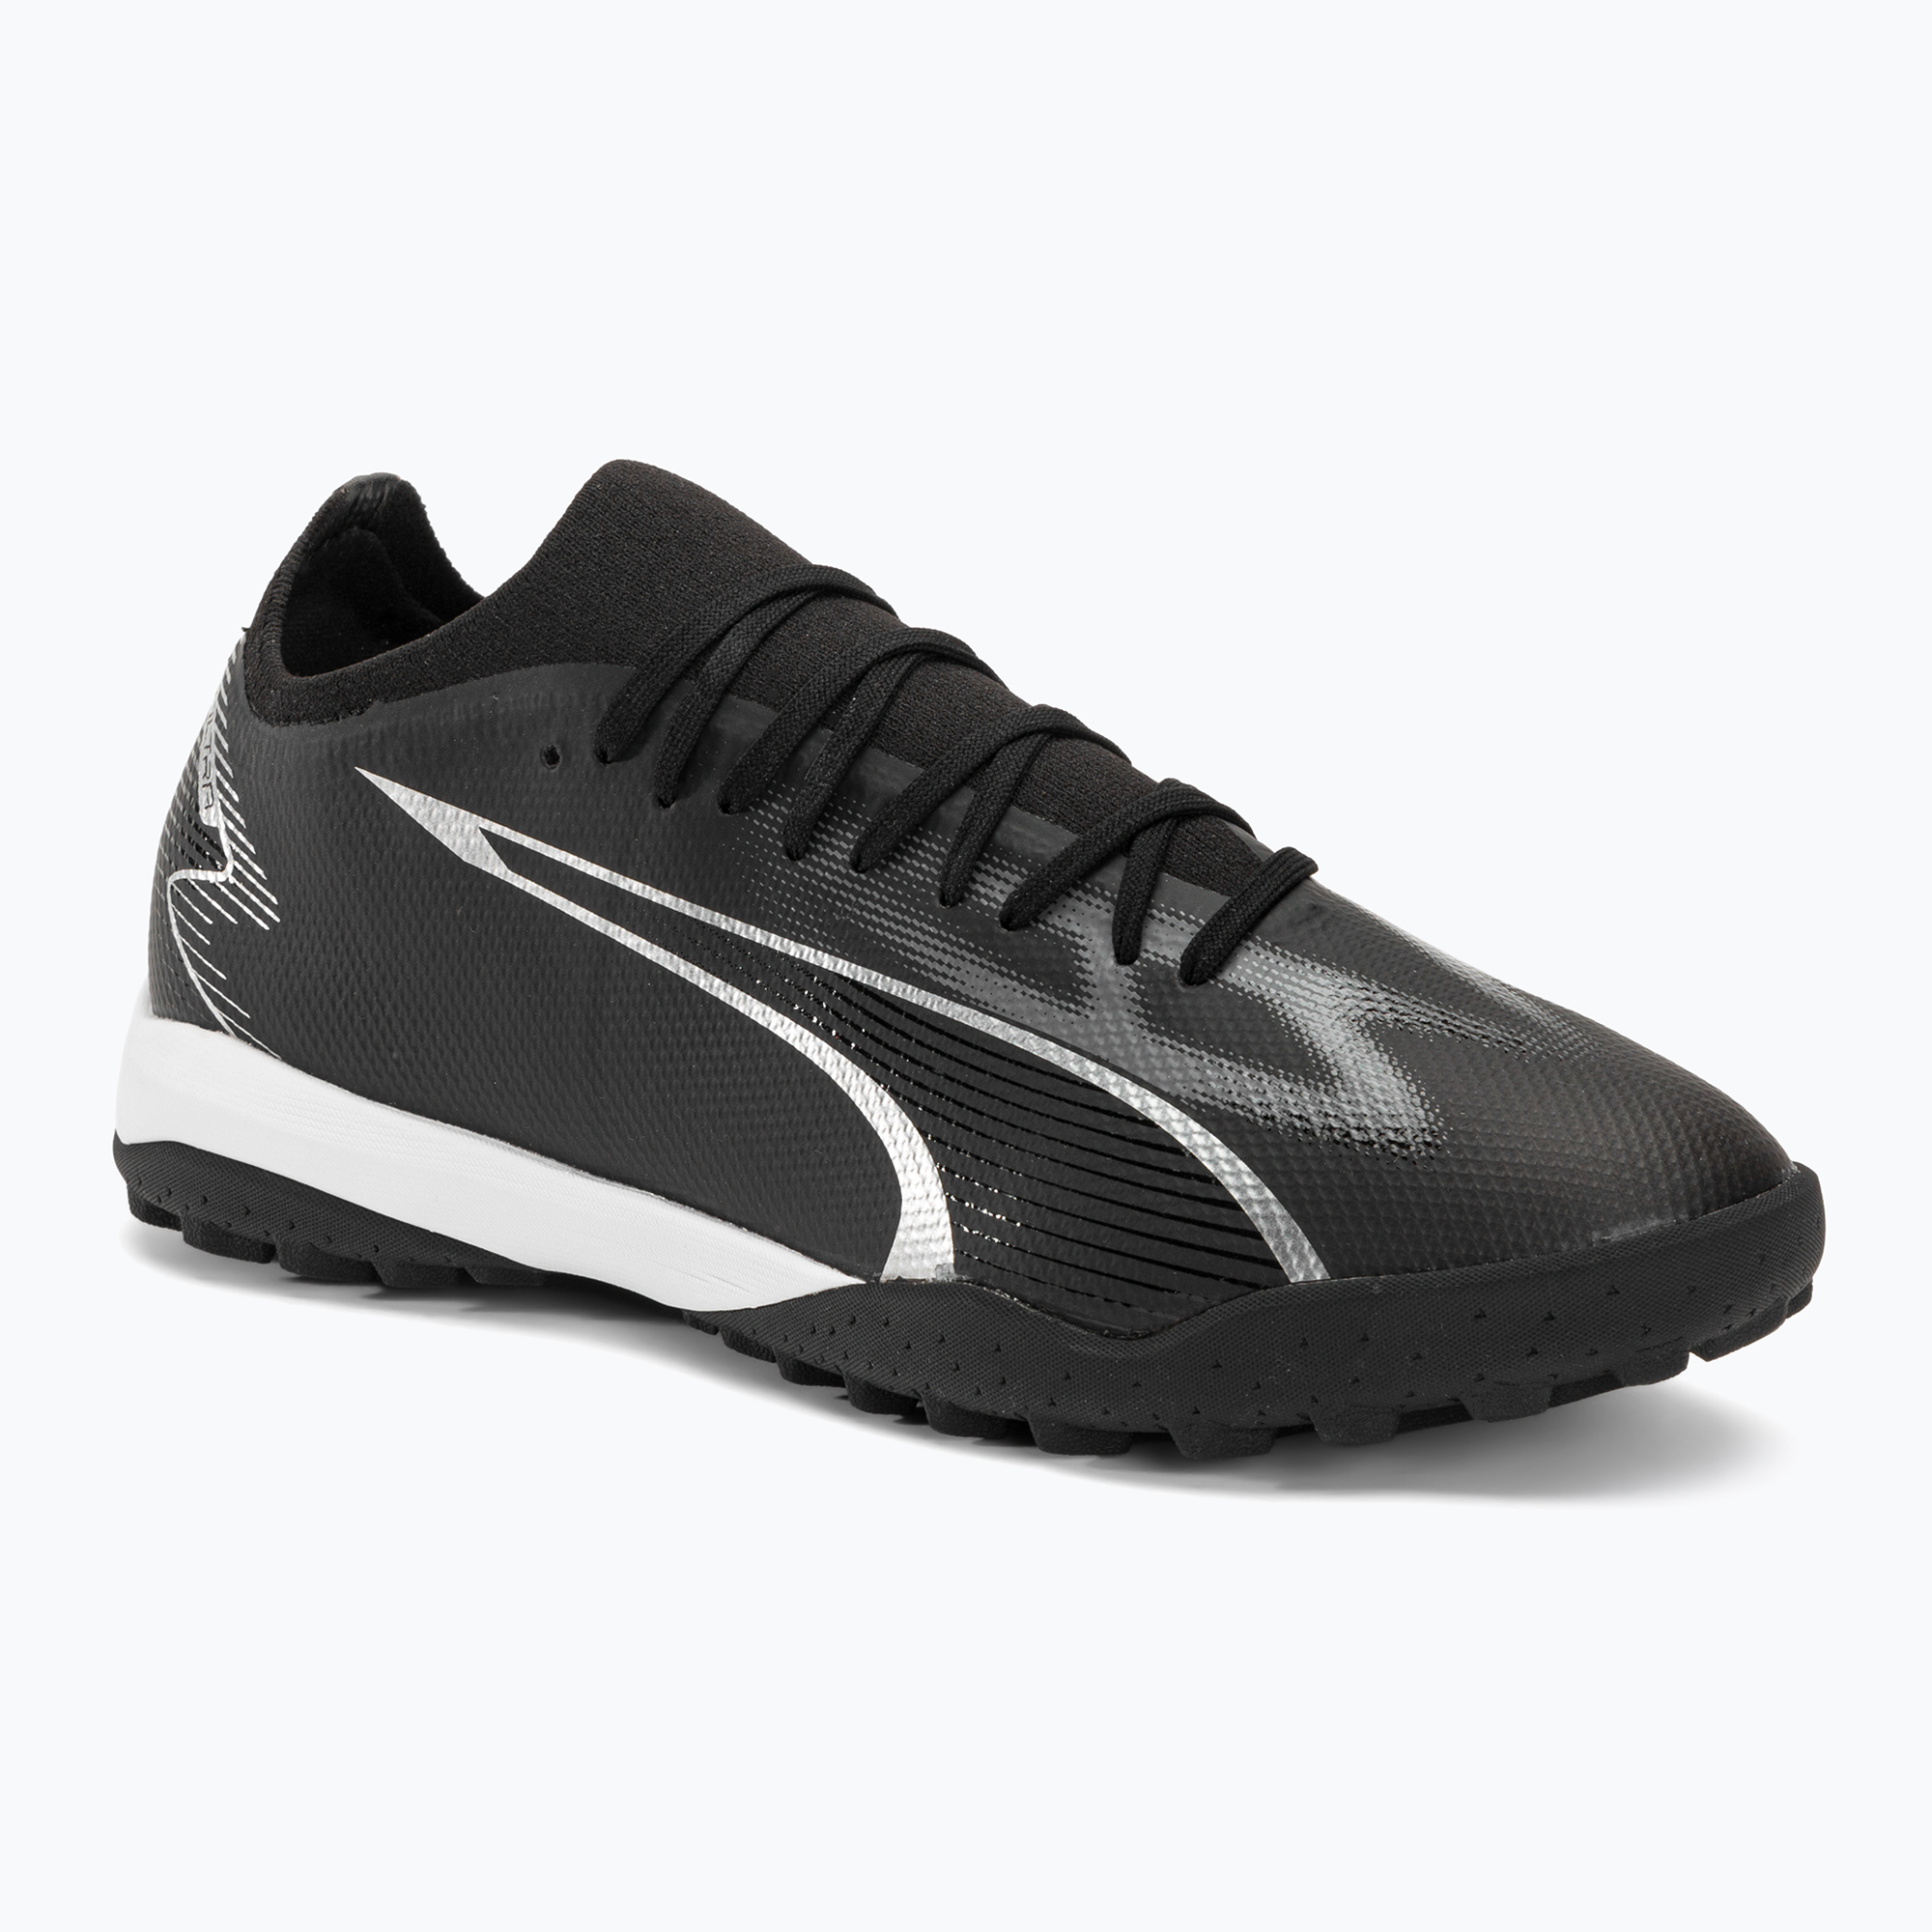 PUMA Ultra Match TT мъжки футболни обувки puma black/asphalt